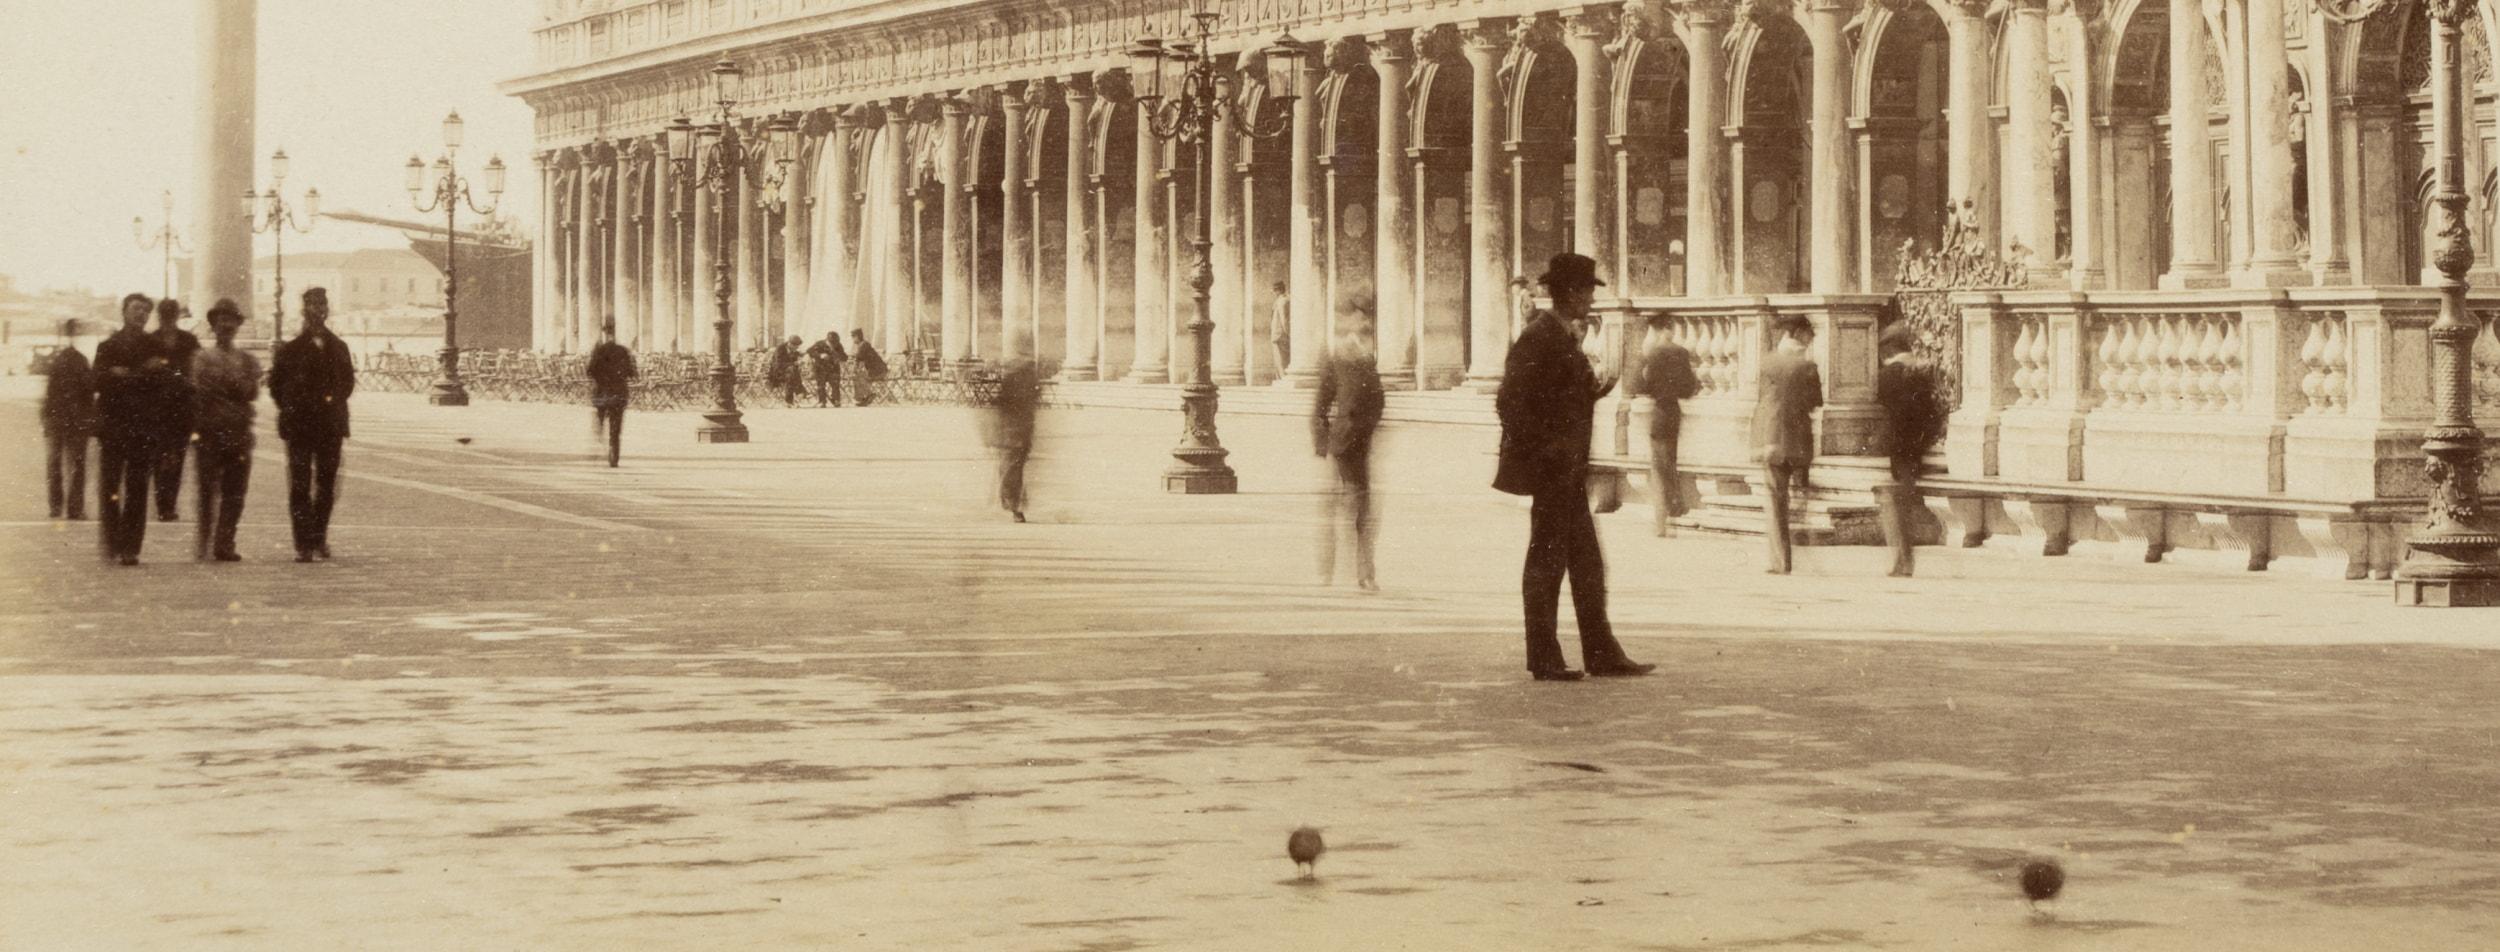 Carlo Naya (1816 Tronzano Vercellese - 1882 Venedig) Kreis: Blick von Norden über die Piazzetta auf die Libreria di San Marco mit Passanten, rechts im Vordergrund der Campanile mit der Loggetta, Venedig, um 1880, Albumenpapierabzug

Technik: